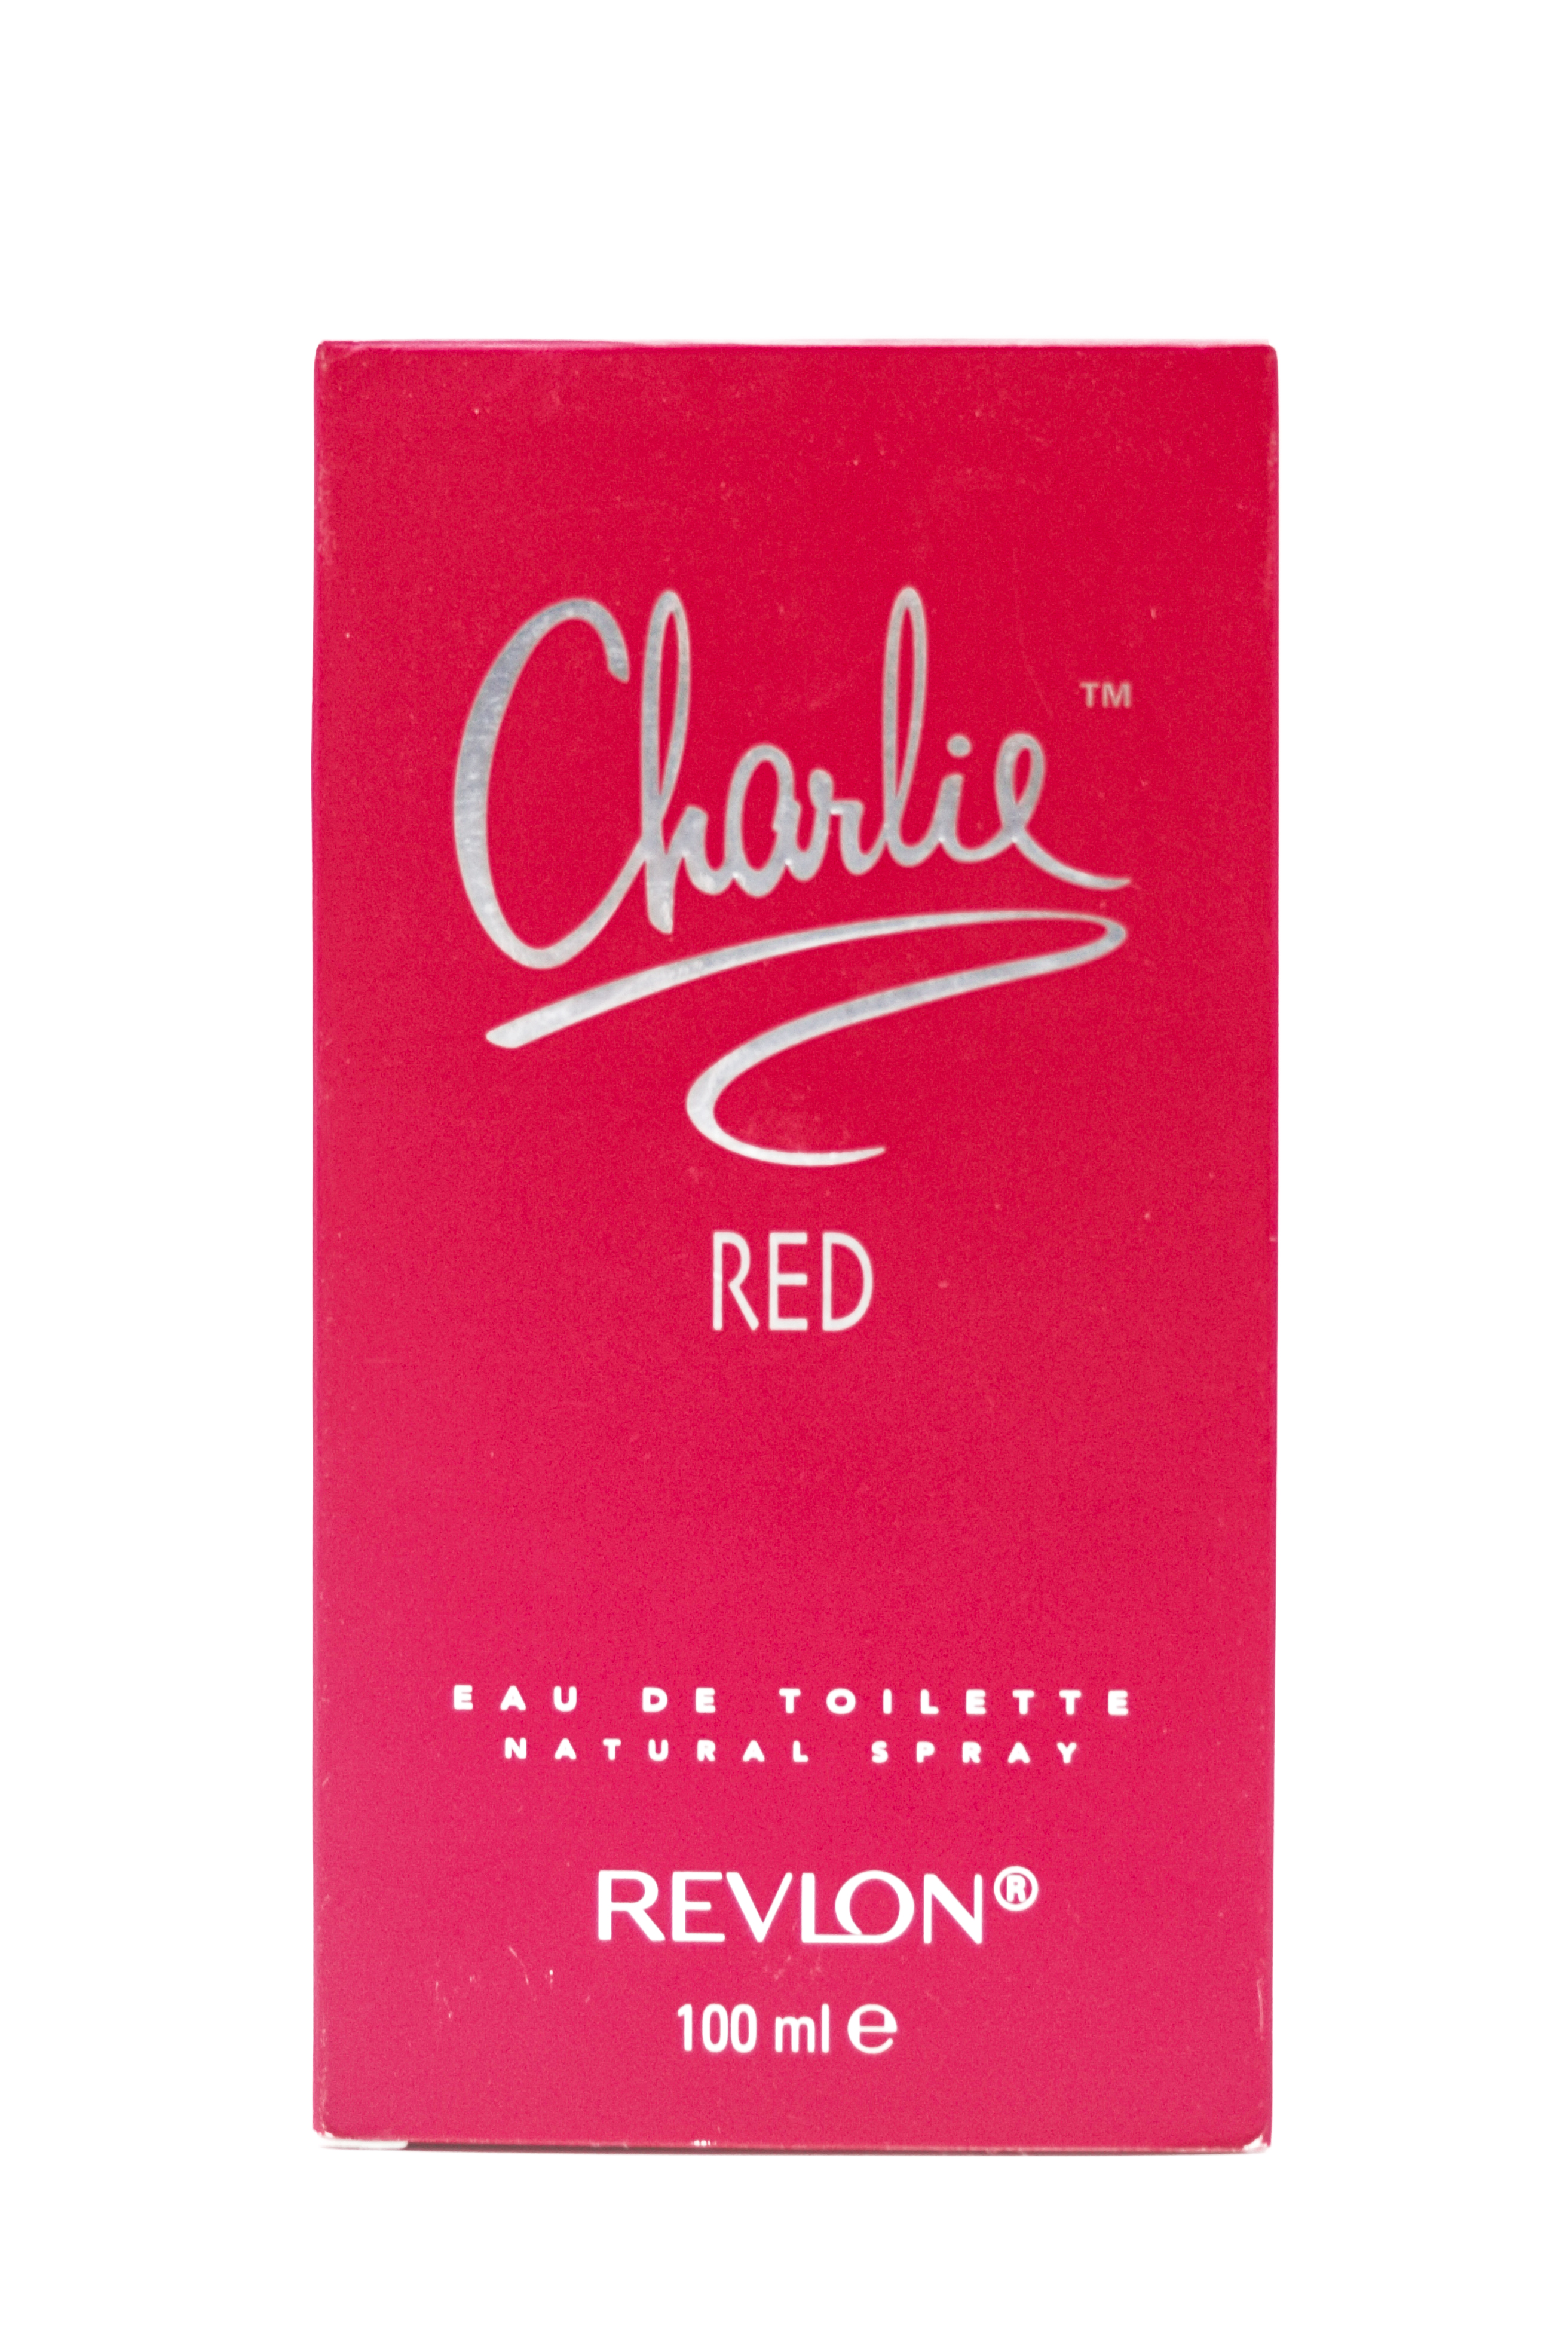 Charlie Red By Revlon 100 ml Eau De Toilette Vaporisateur Natural Spray  SKU 96826